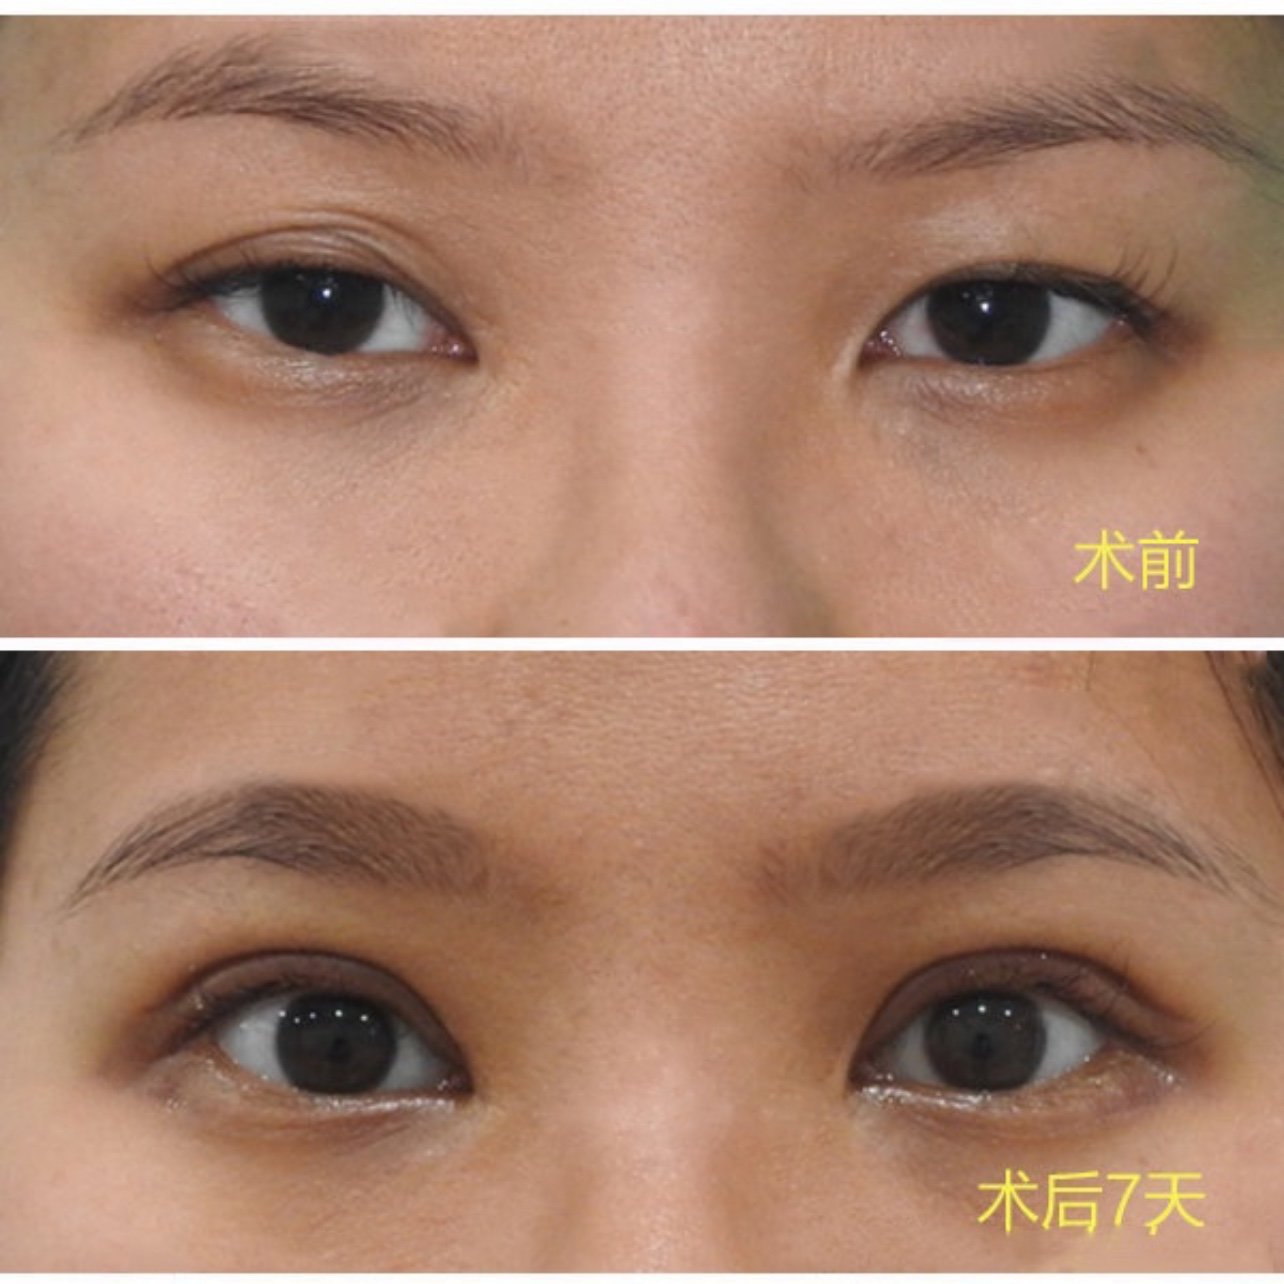 术前:姑娘术前右眼粘连,整个双眼皮呈现多重褶的不良